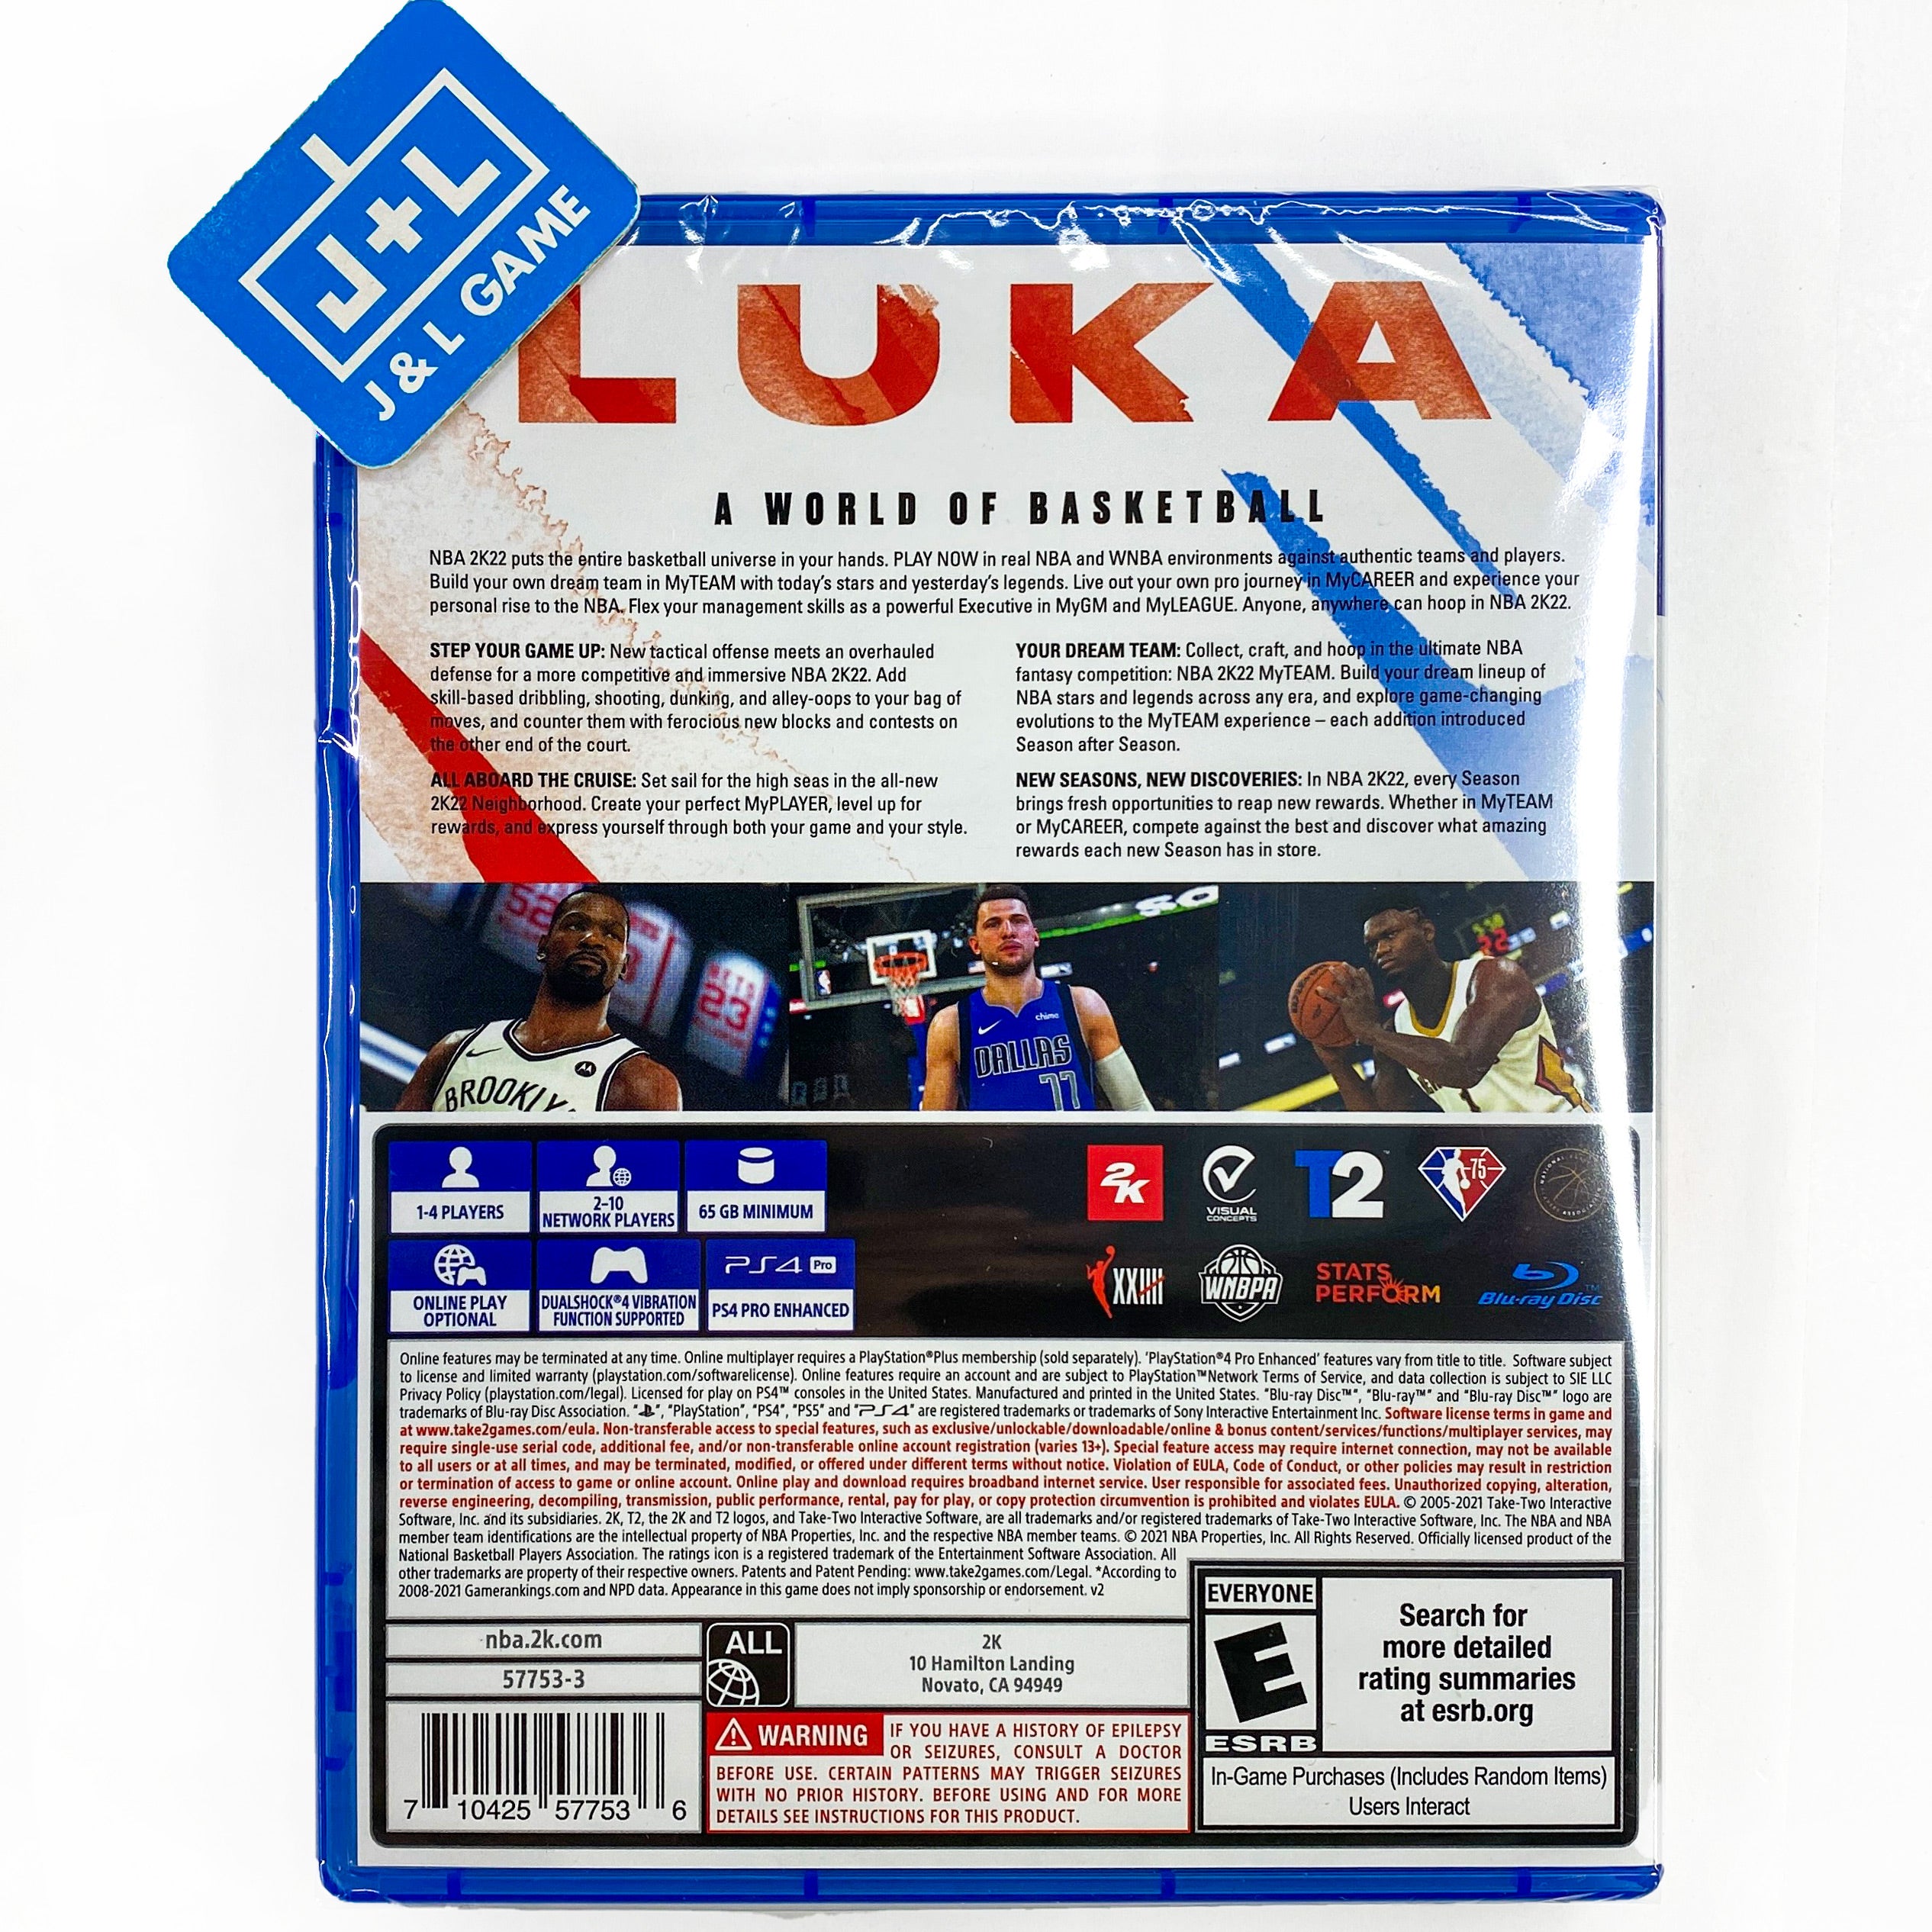 NBA 2K22 - (PS4) PlayStation 4 Video Games 2K   